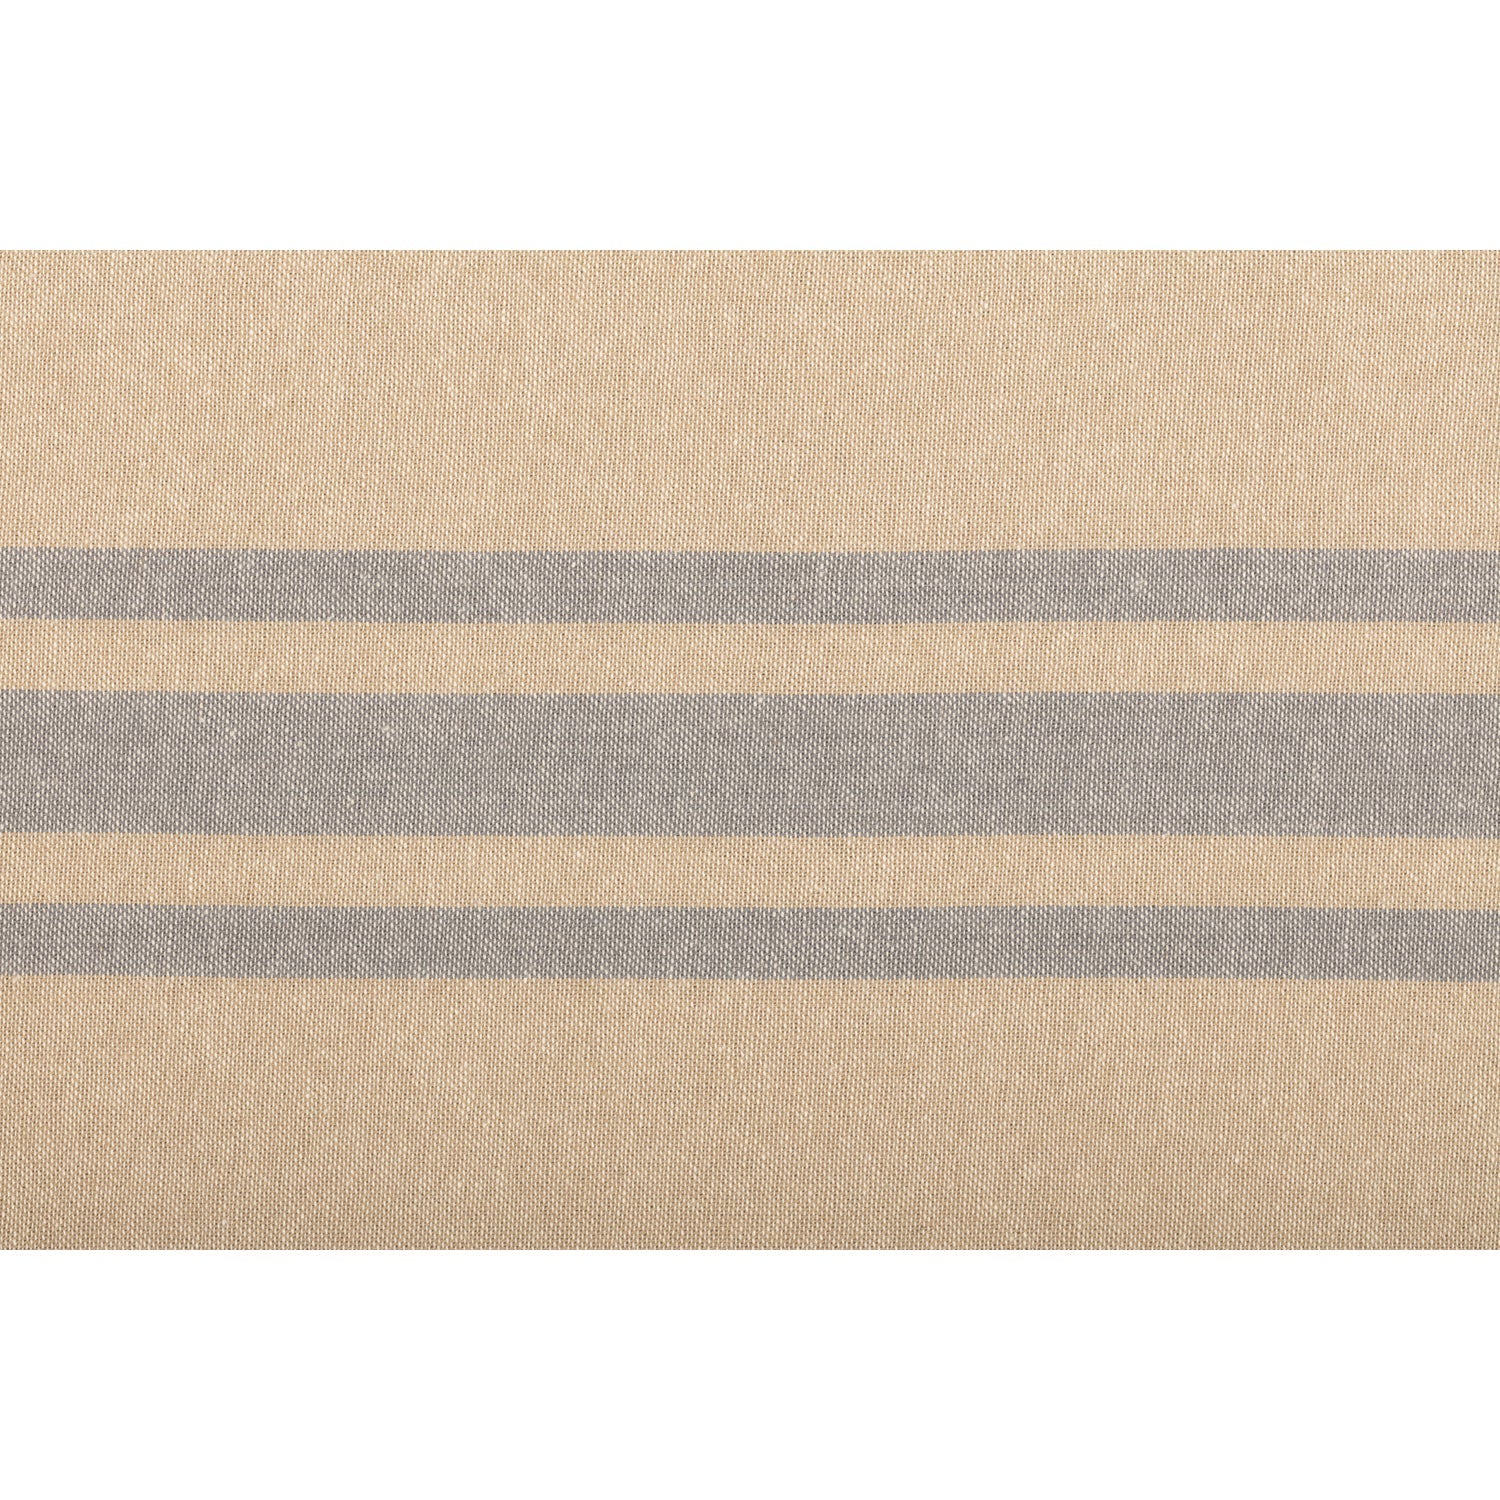 Farmer's Market Grain Sack Stripe King Pillow Case Set of 2 21x40 VHC Brands